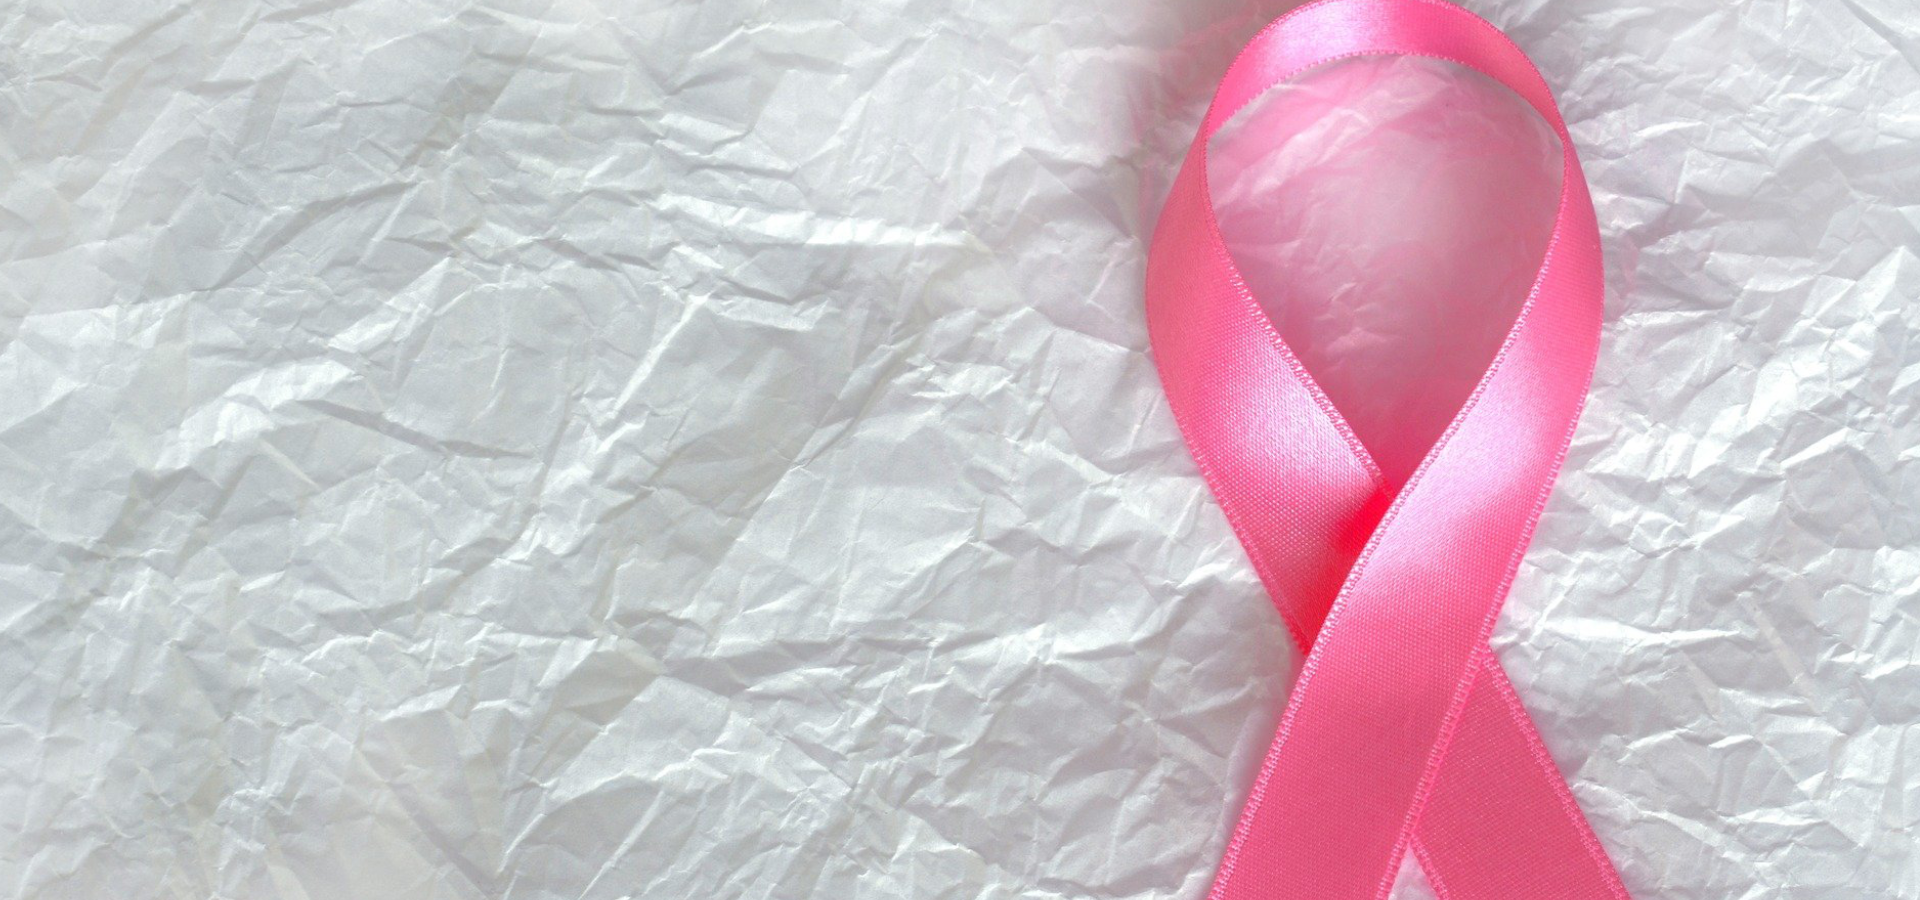 Dois terços das mulheres com cancro da mama mantiveram-se empregadas